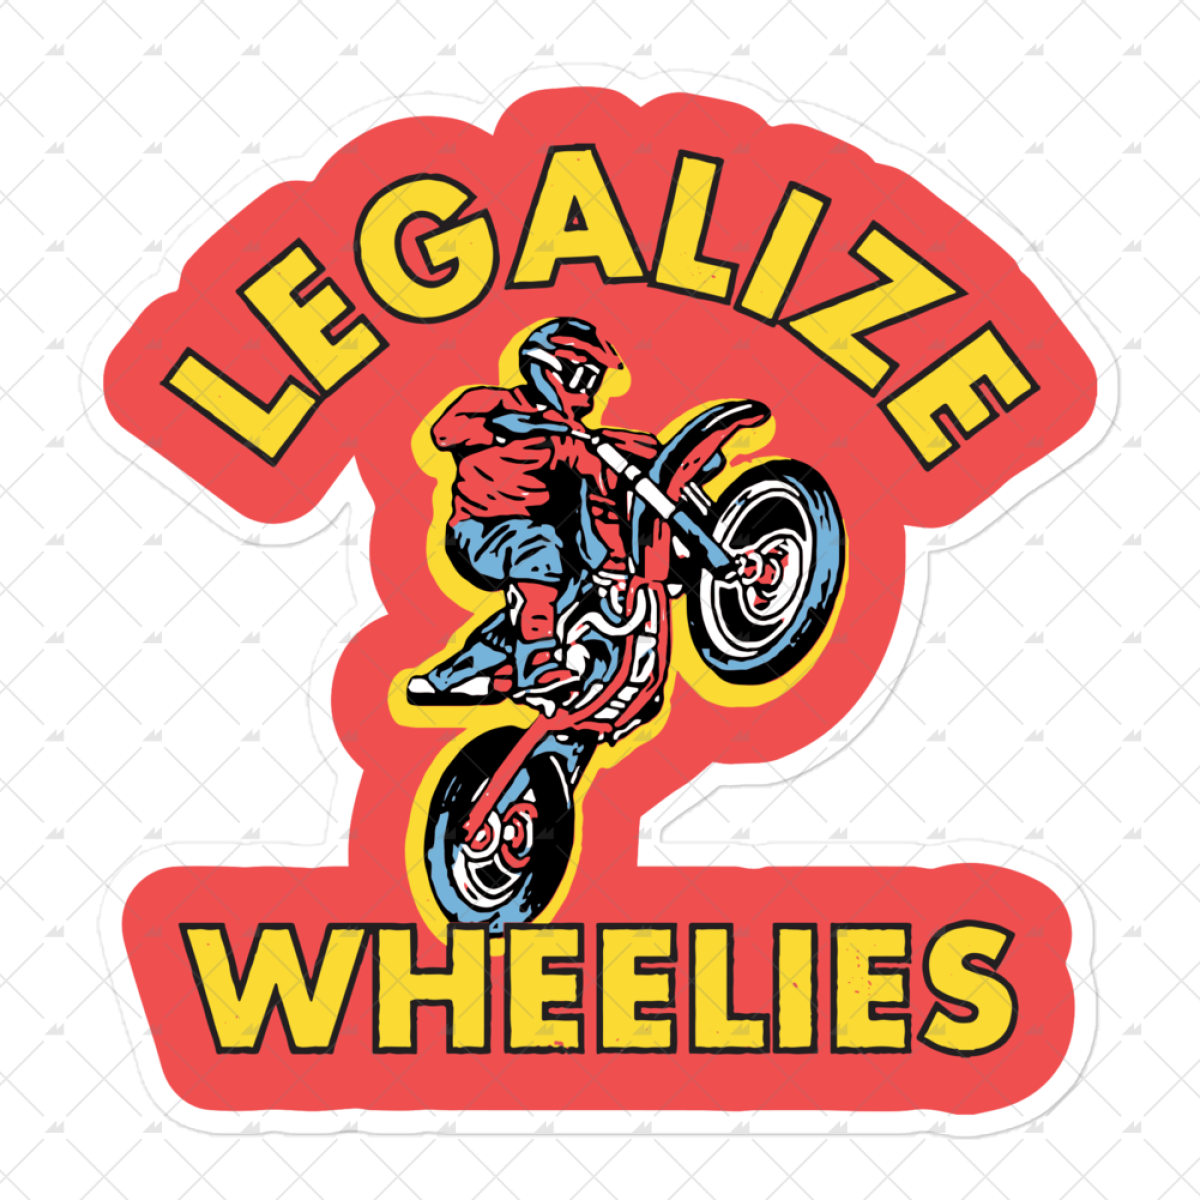 Legalize Wheelies - Sticker